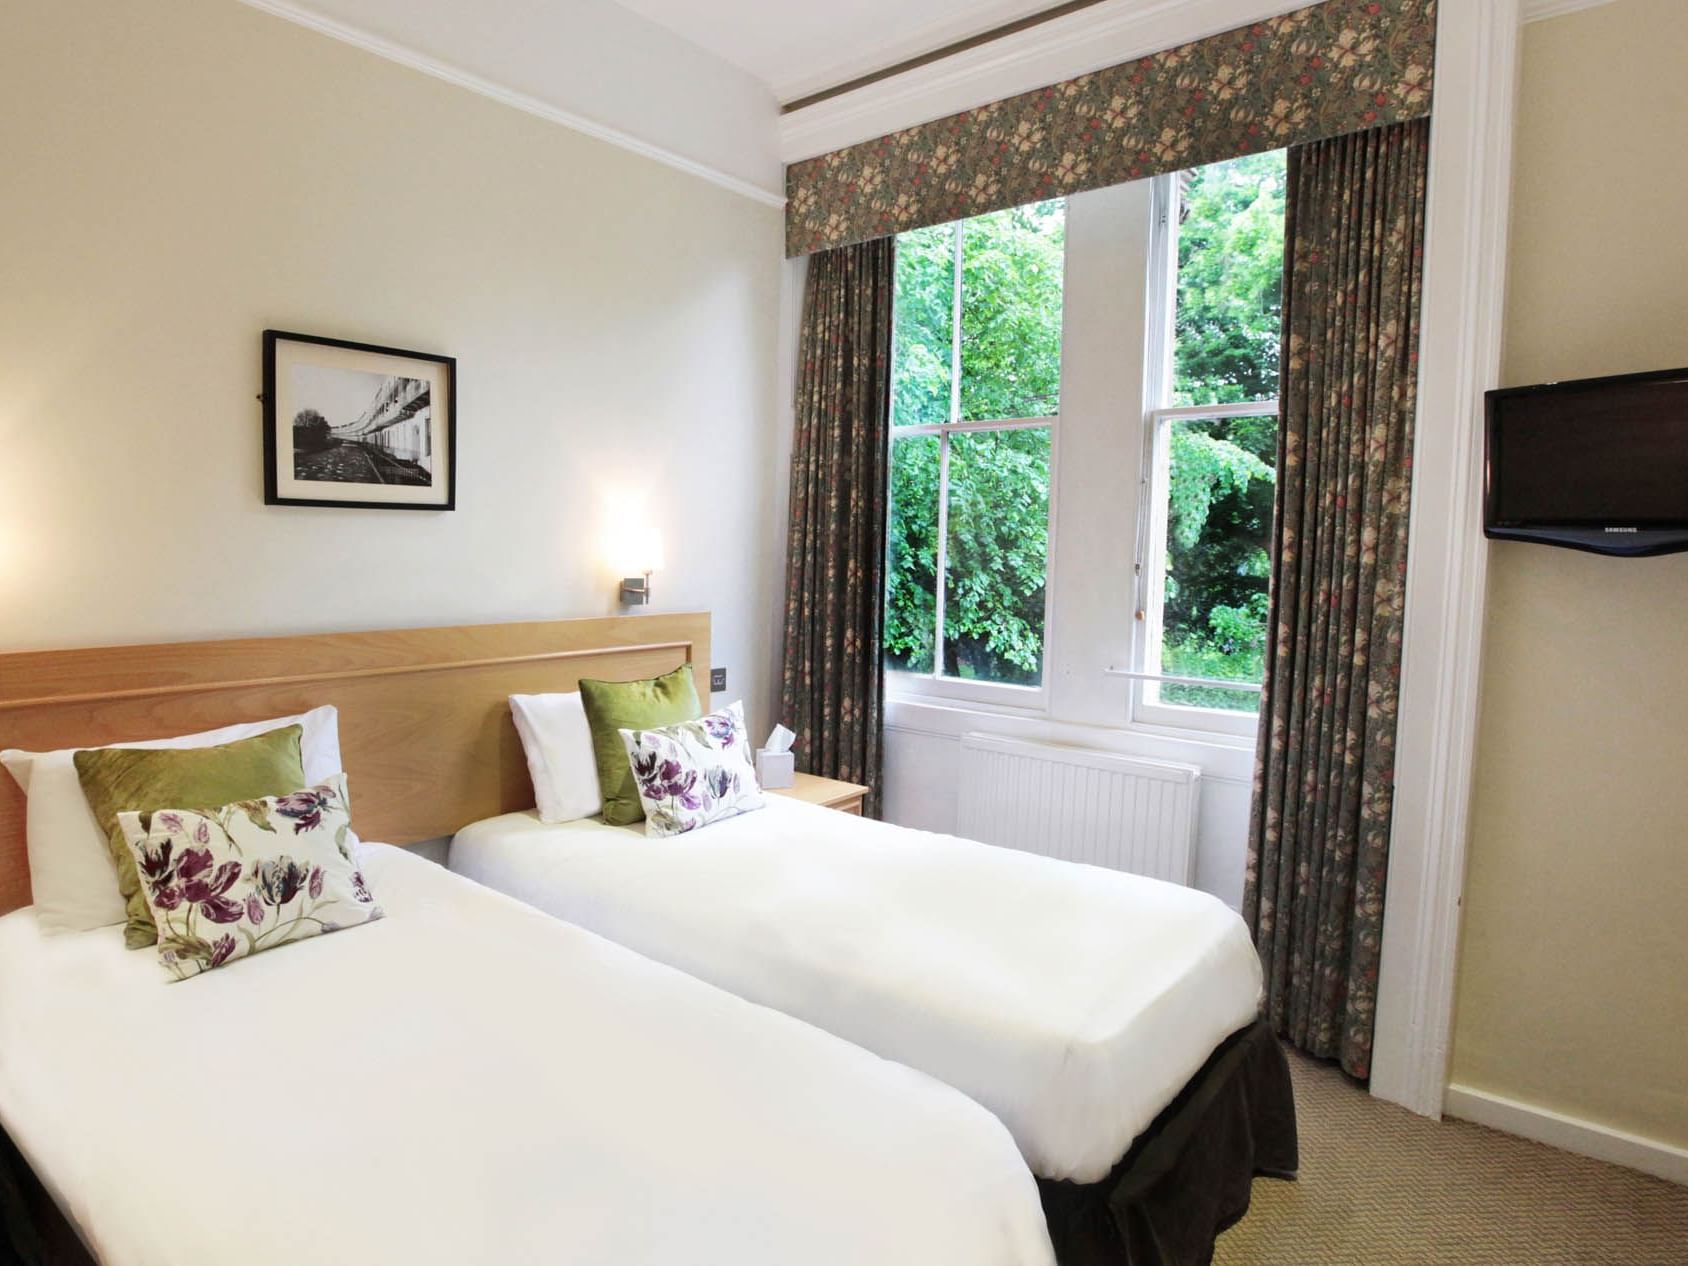 Standard Twin Room at Victoria Square Hotel in Bristol